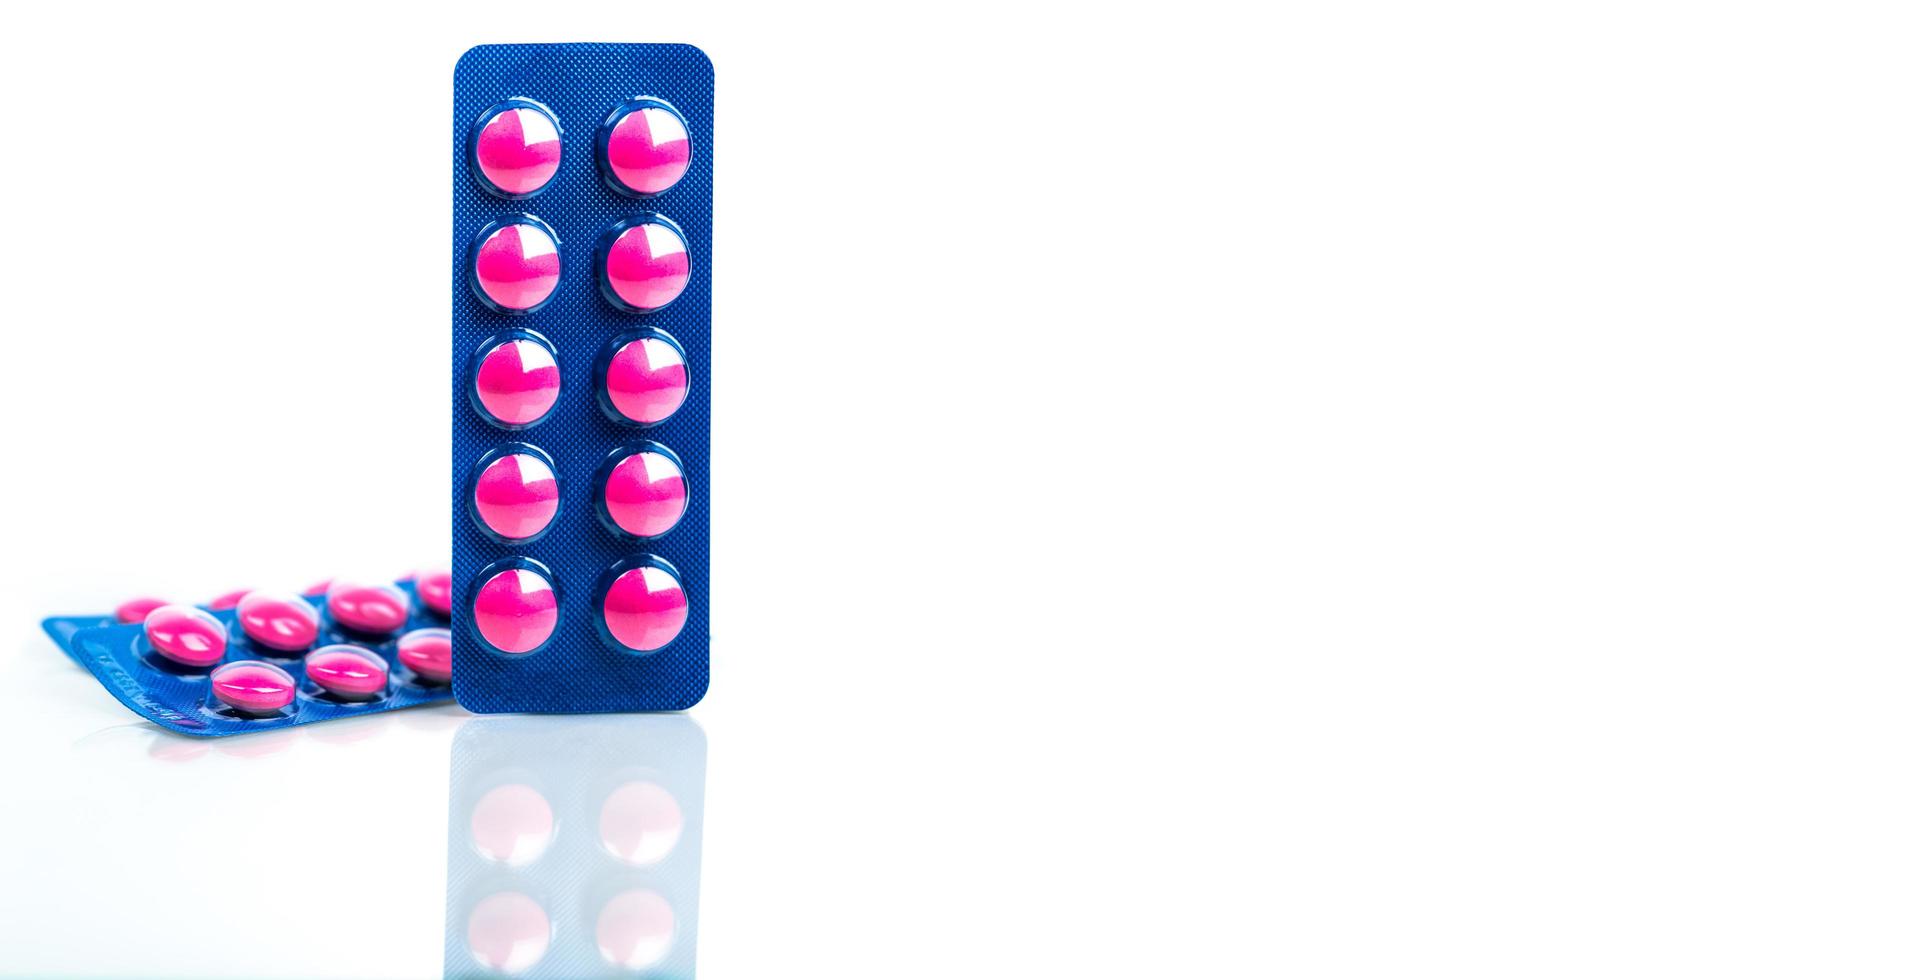 pílula de comprimidos rosa em blister azul isolado no fundo branco. remédio analgésico. indústria farmacêutica. remédio para tratar enxaqueca, febre, dor de dente. produtos de farmácia. foto